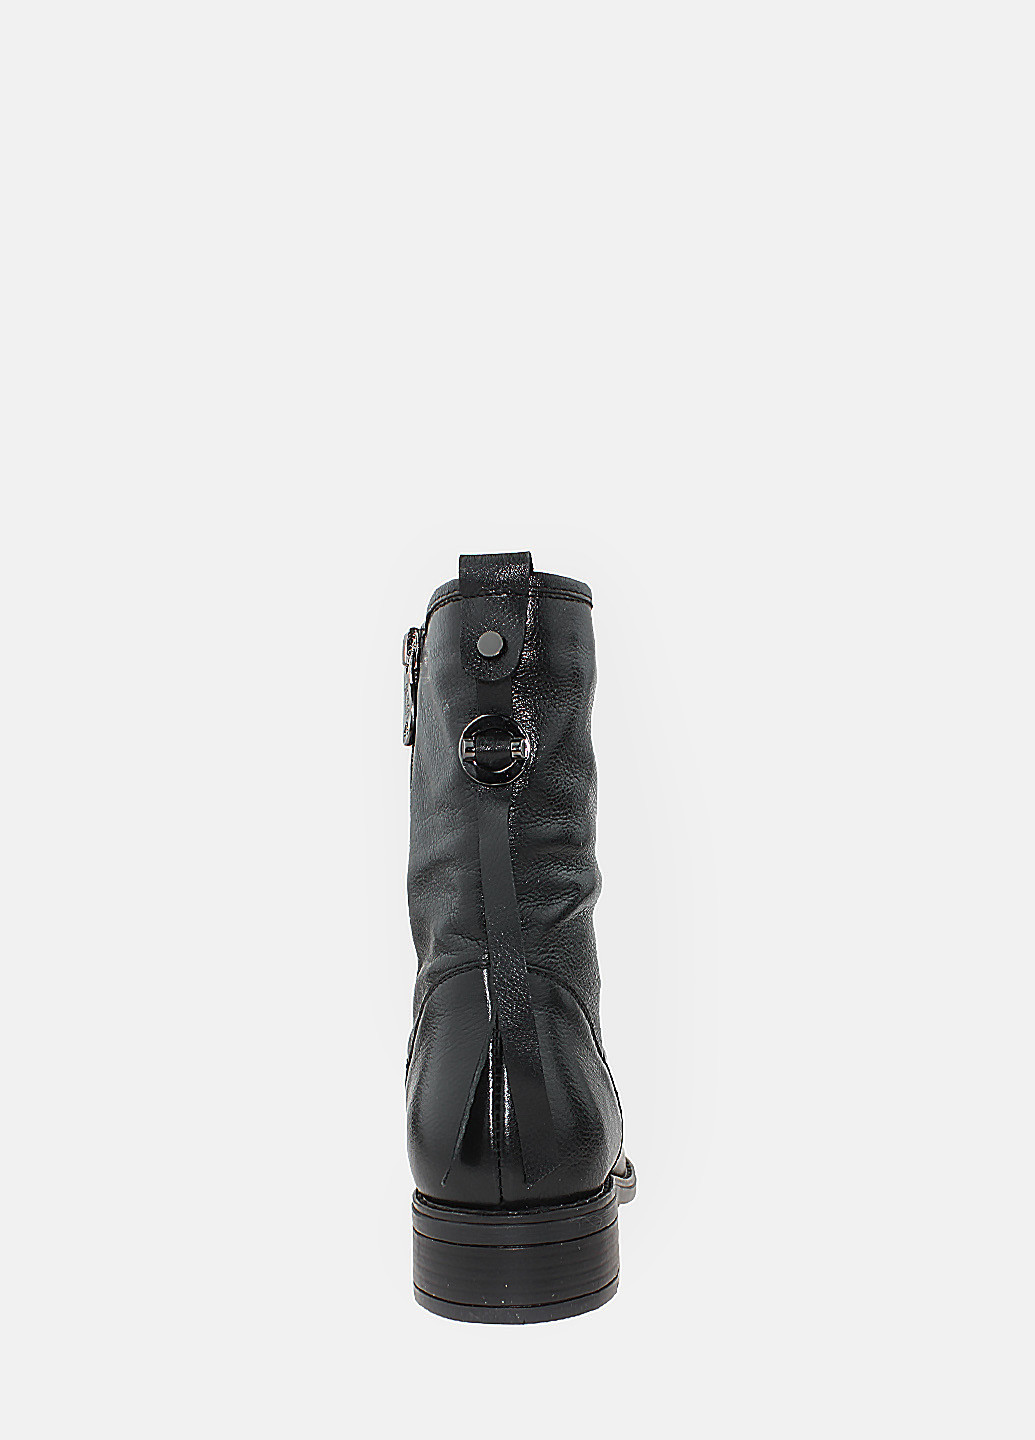 Осенние ботинки rr330-2 черный Romax